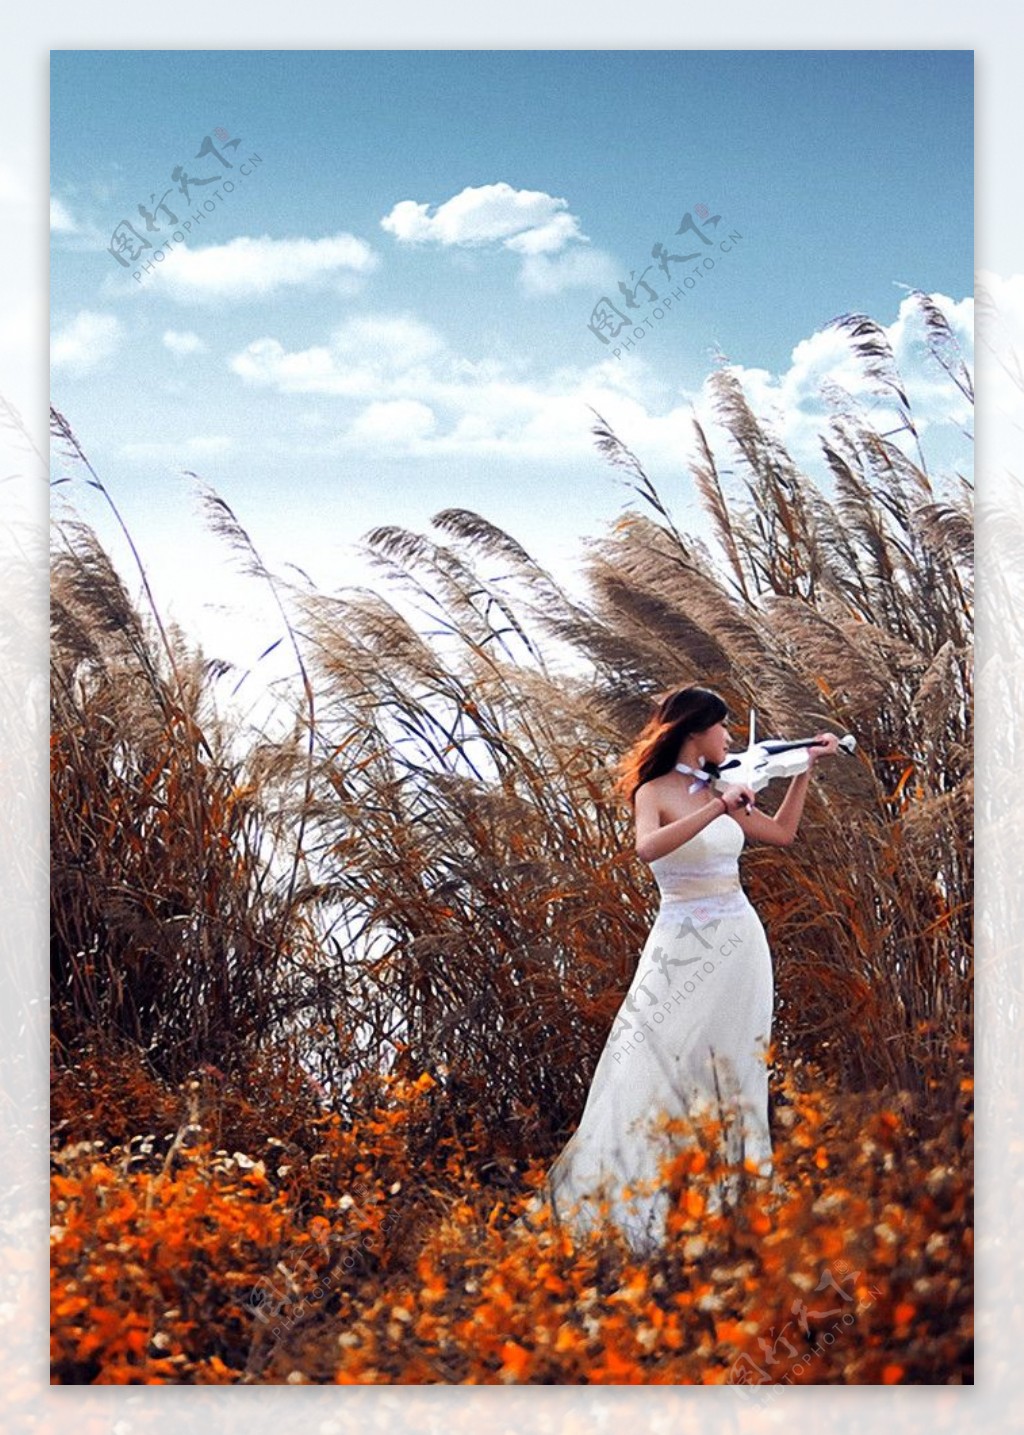 拉小提琴的女人图片